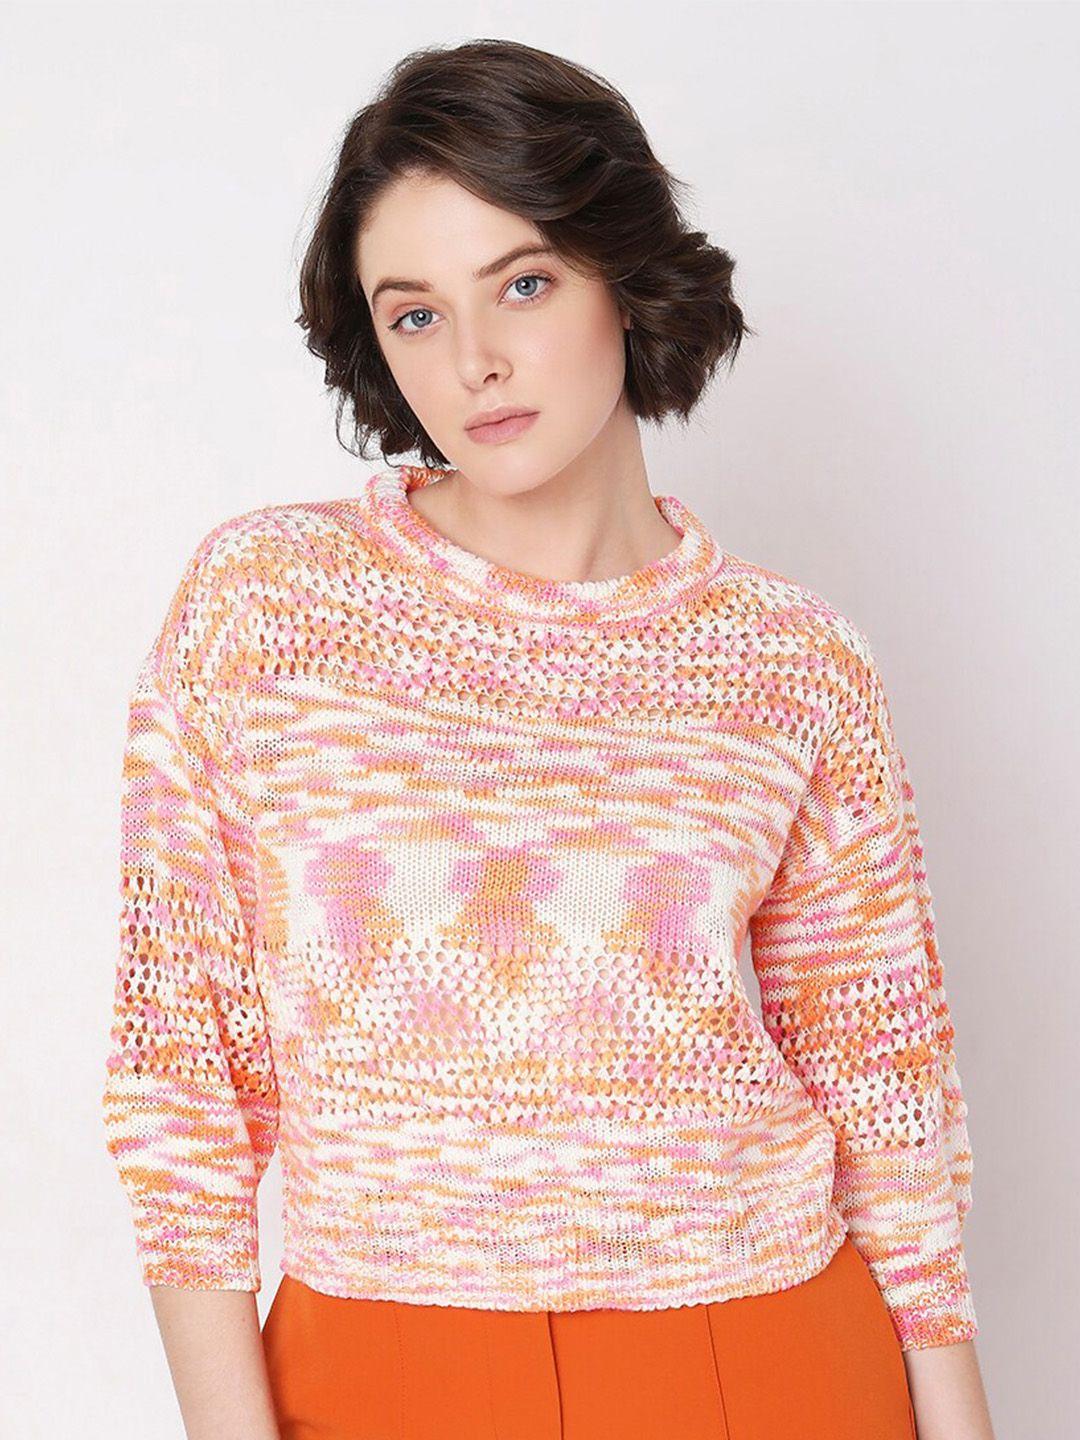 vero moda self designed acrylic pullover